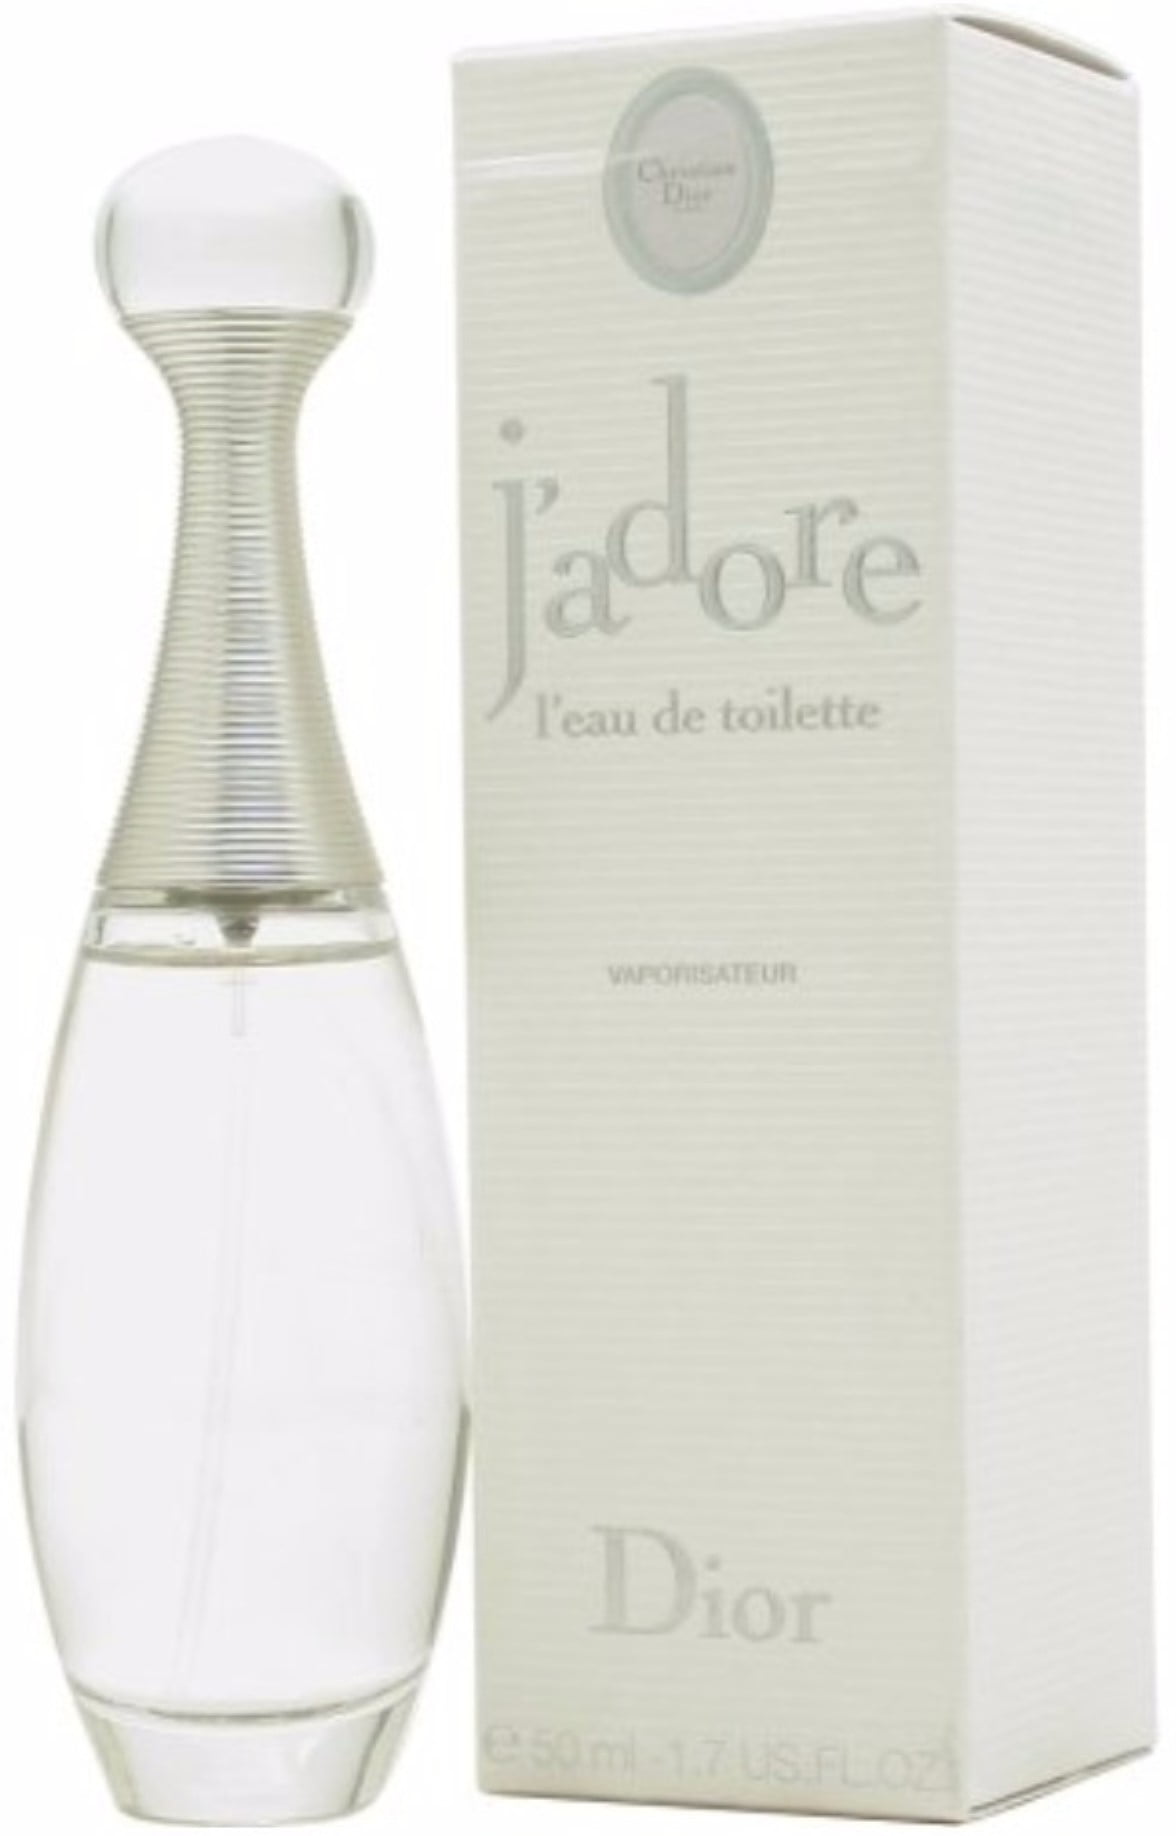 Jamp039adore Eau de Toilette 2002 Dior perfume  a fragrance for women  2002